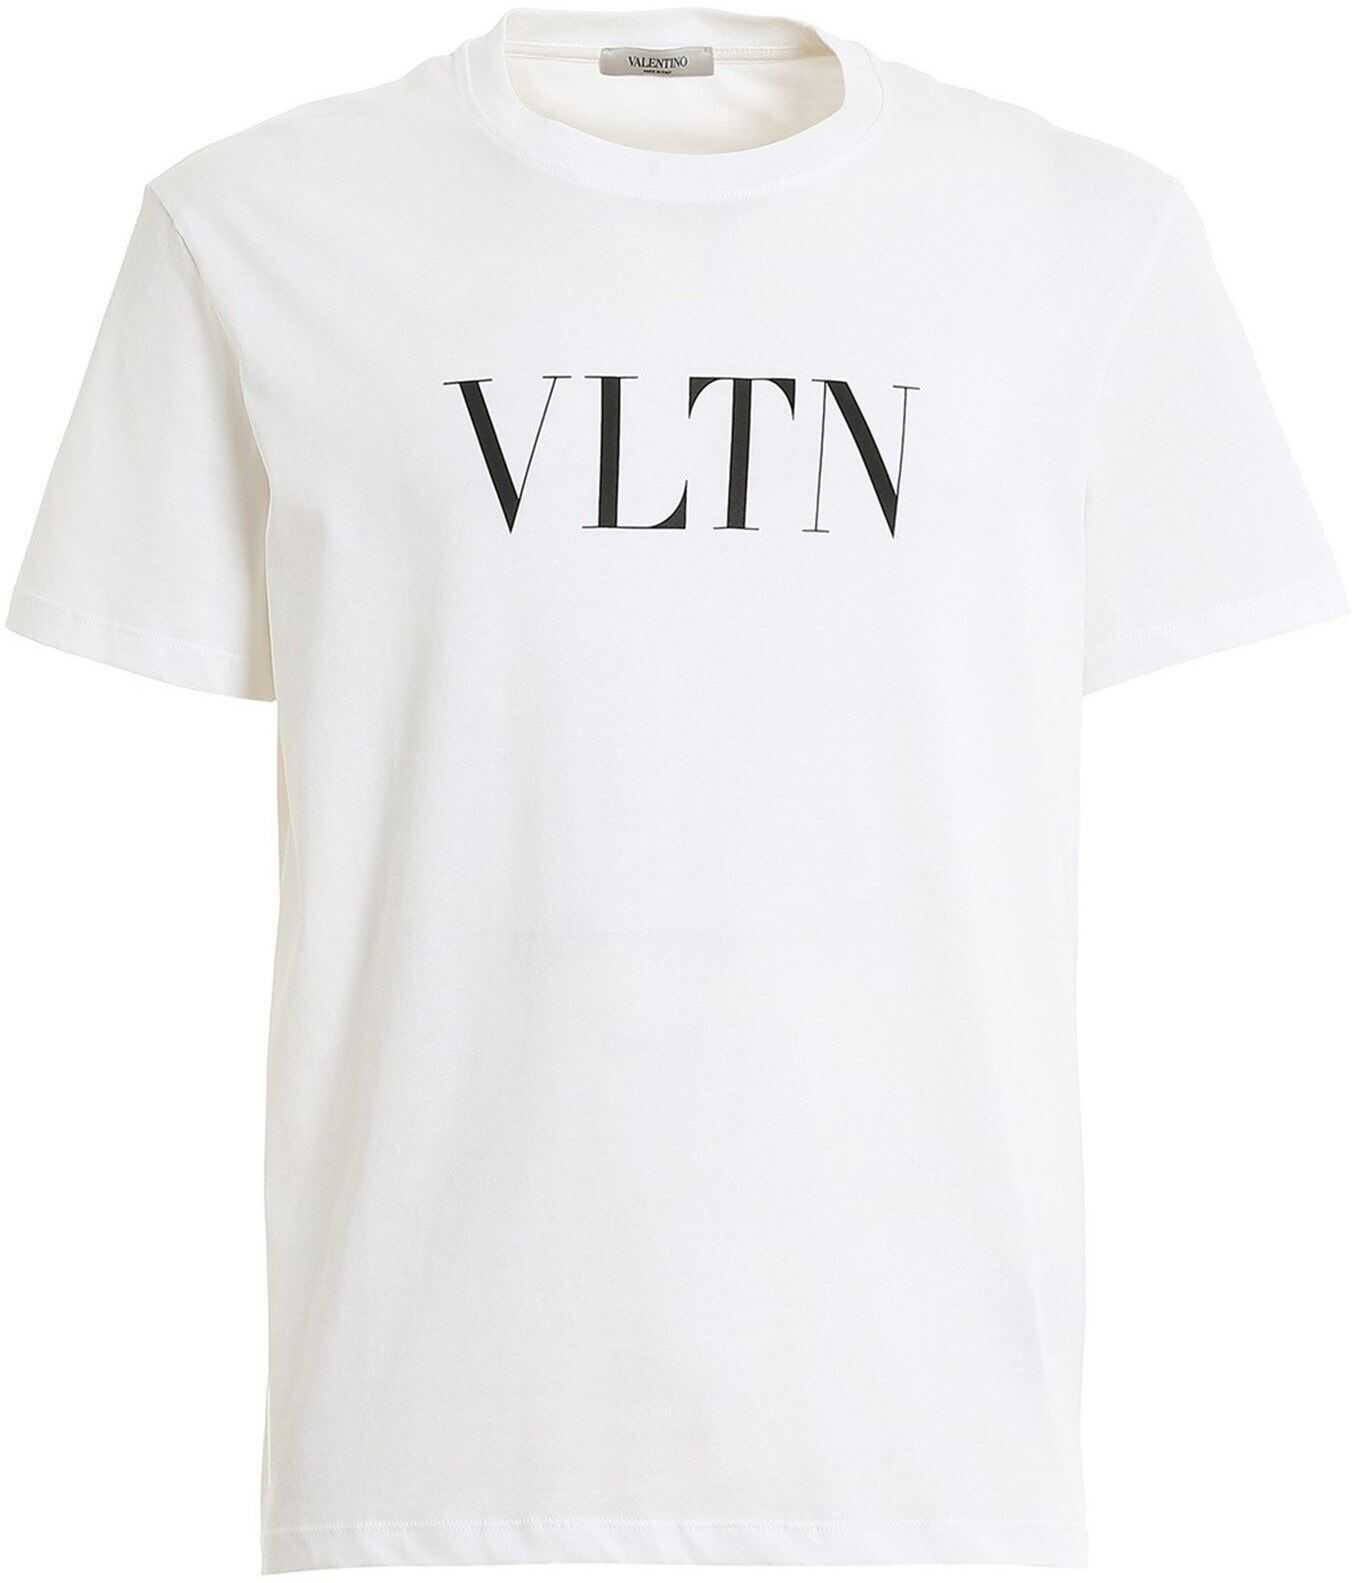 Valentino Garavani Vltn Logo Print T-Shirt In White White